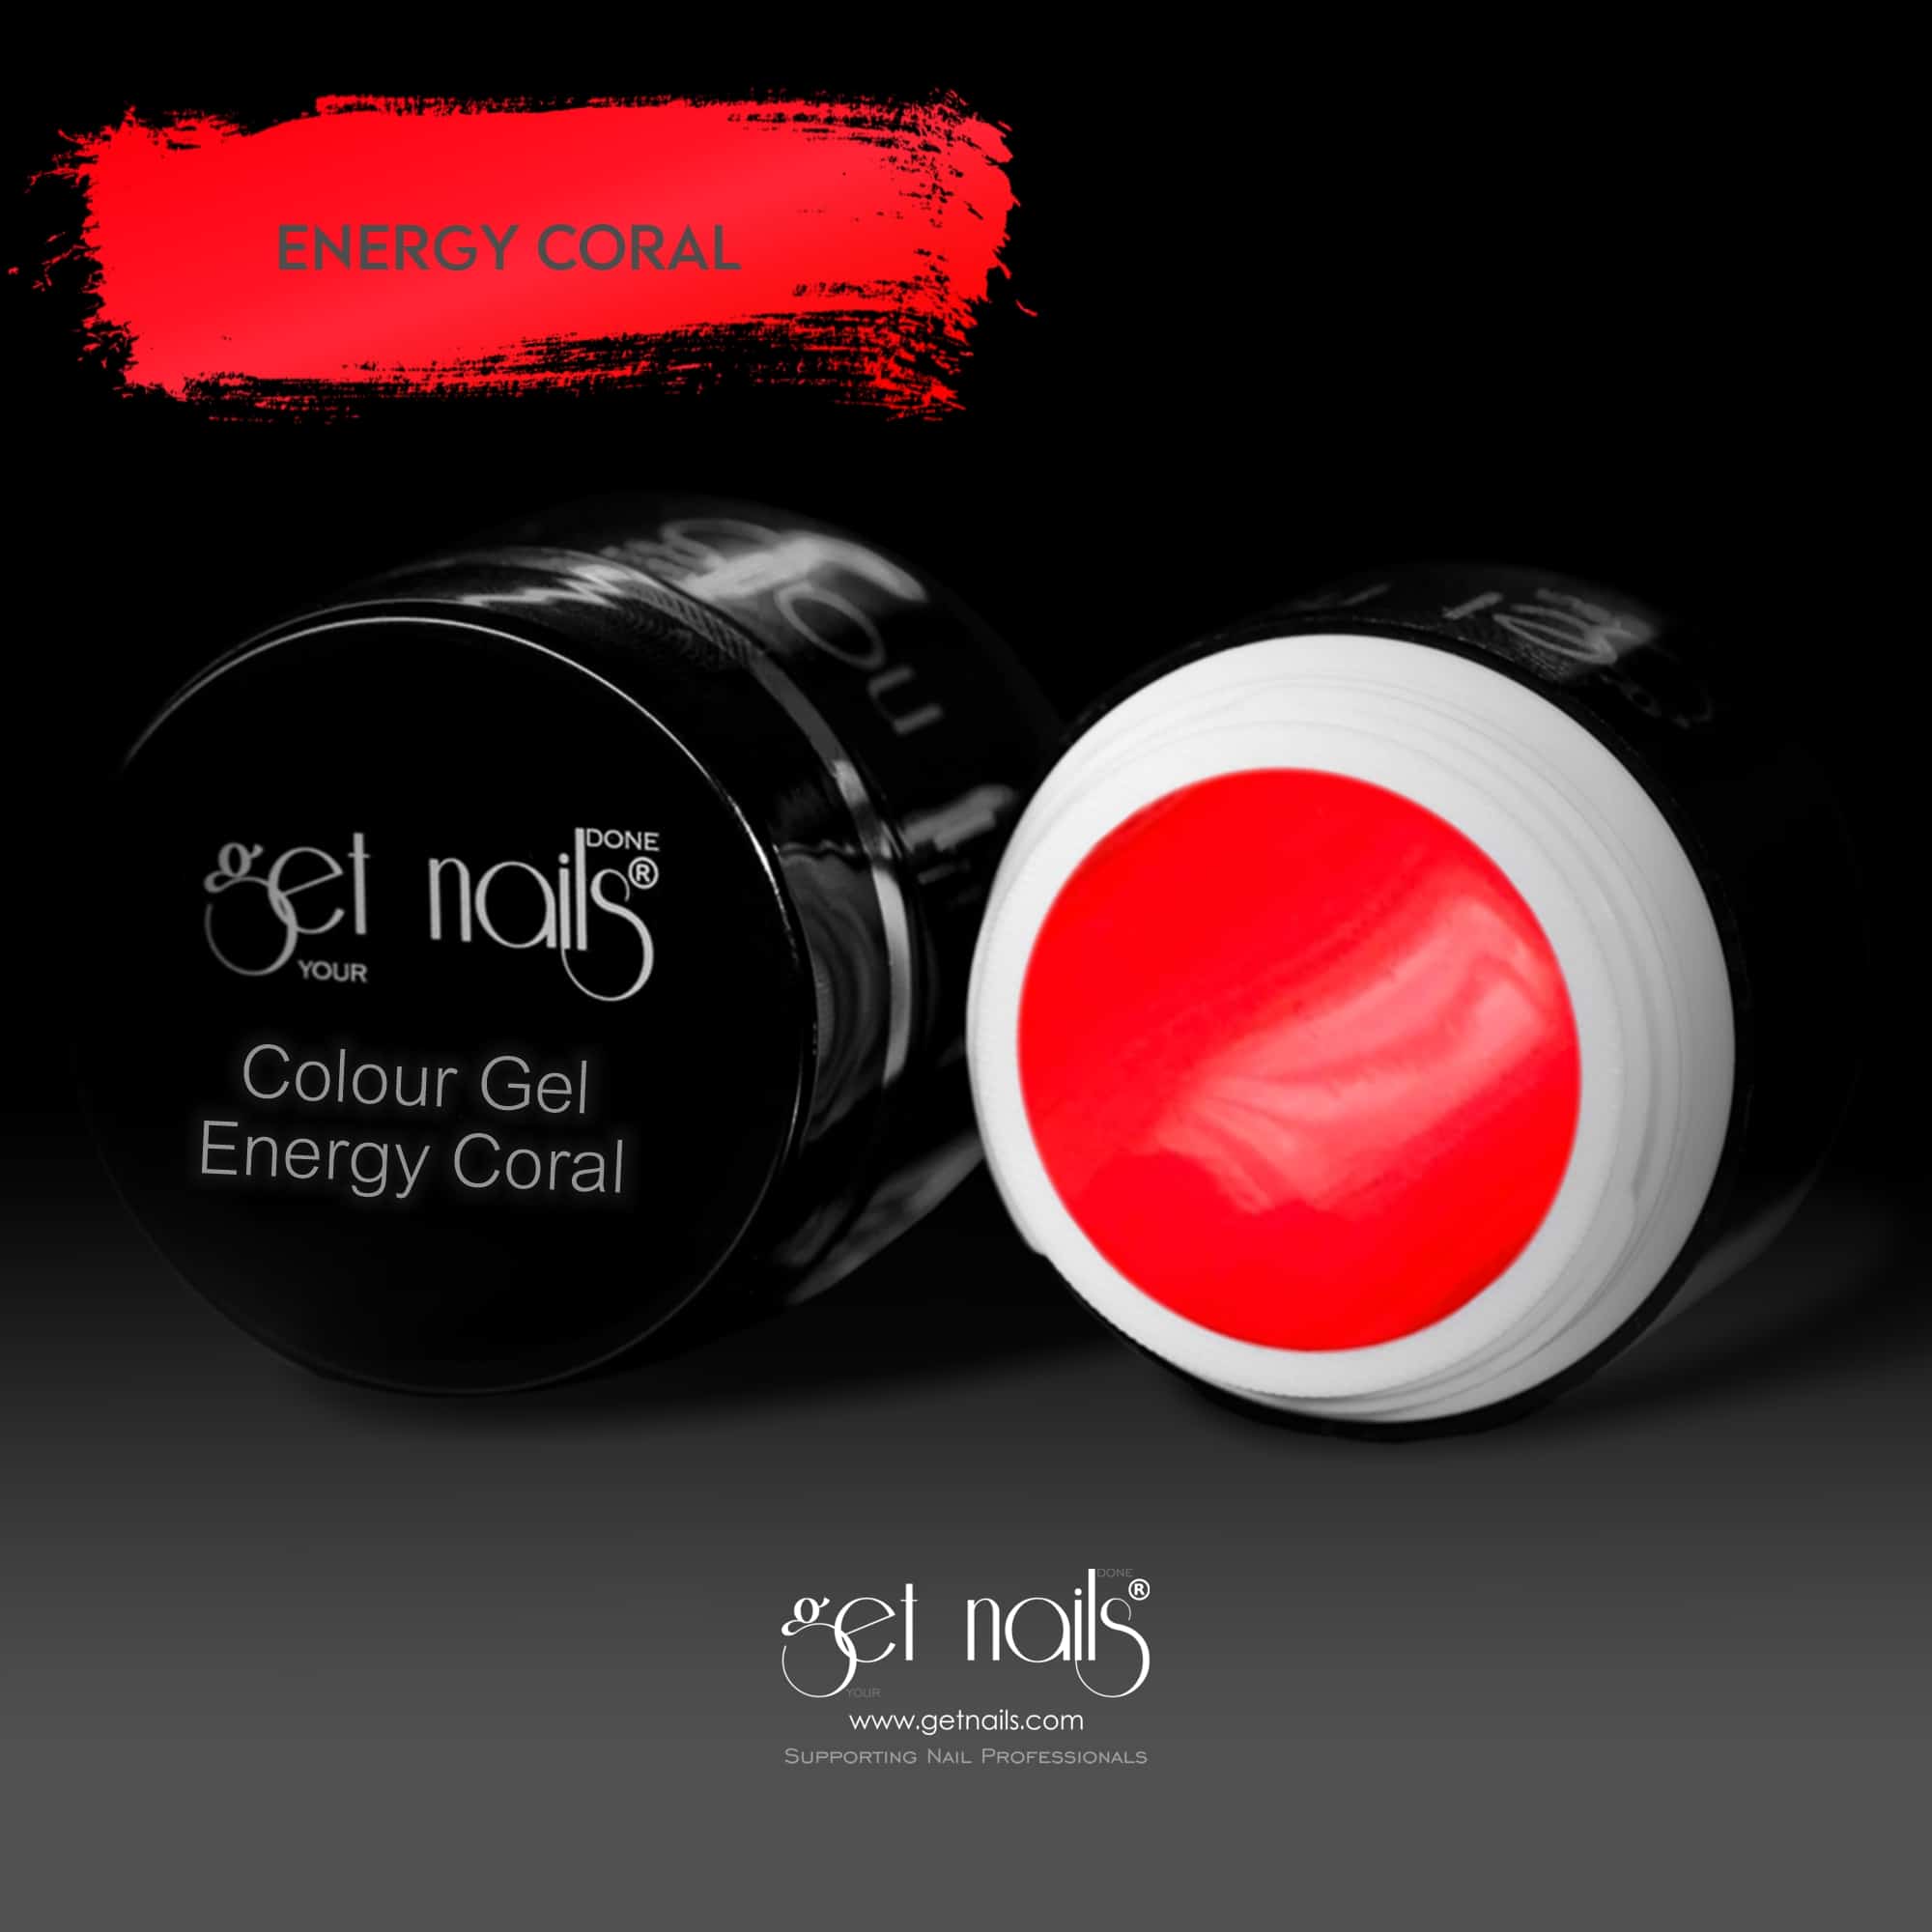 Get Nails Austria - Colour Gel Energy Coral 5g